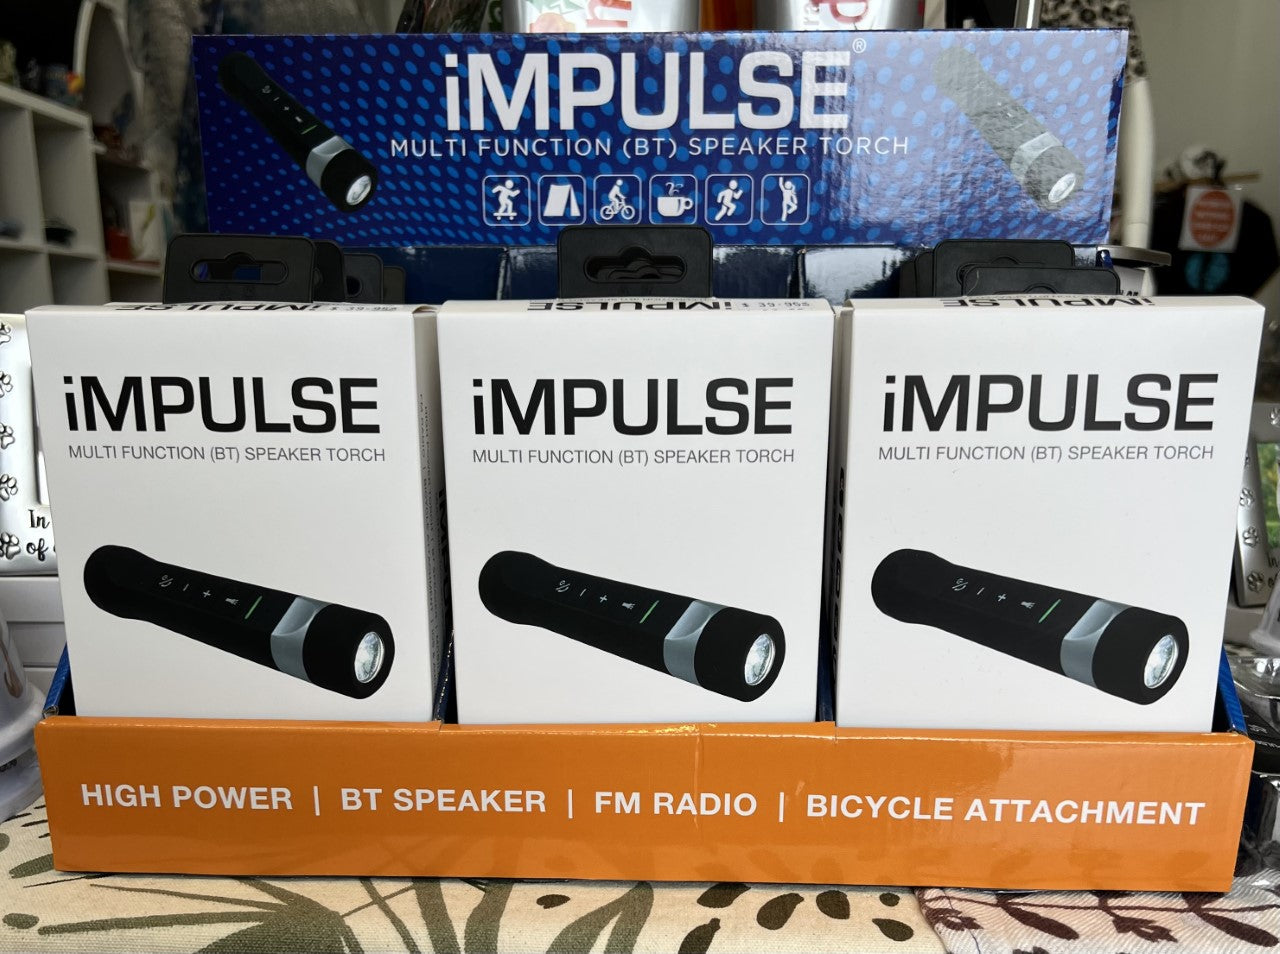 IMPULSE Multi Functional (BT) Speaker Torch